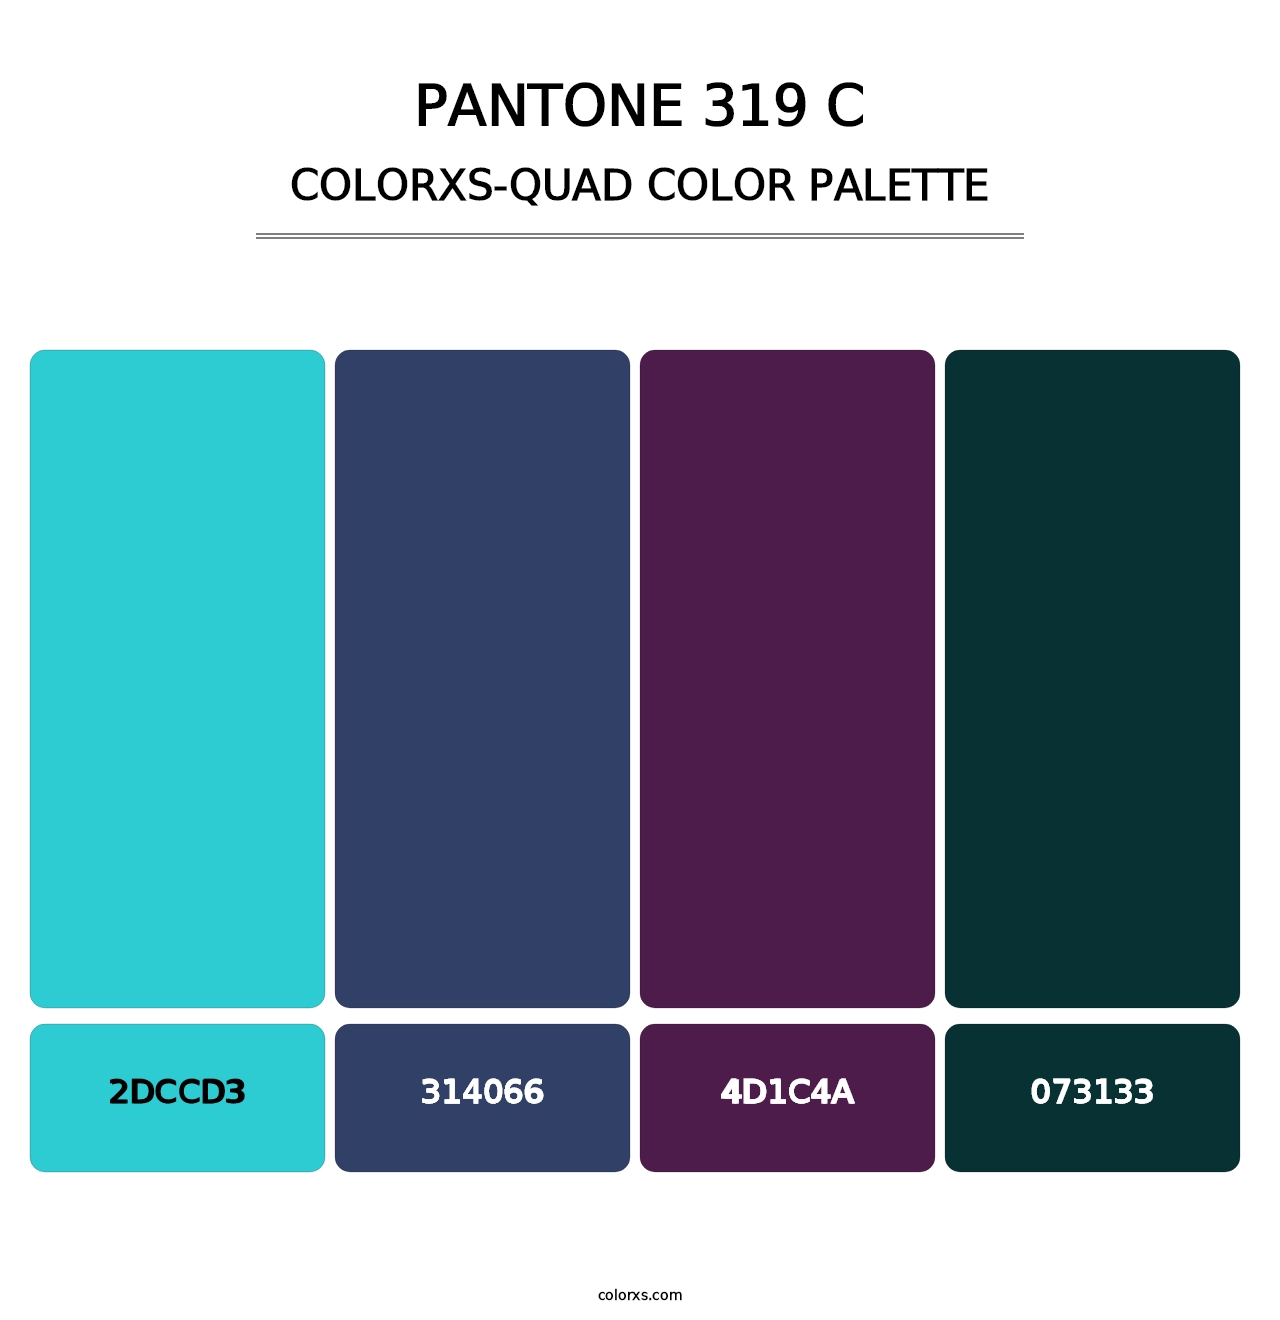 PANTONE 319 C - Colorxs Quad Palette